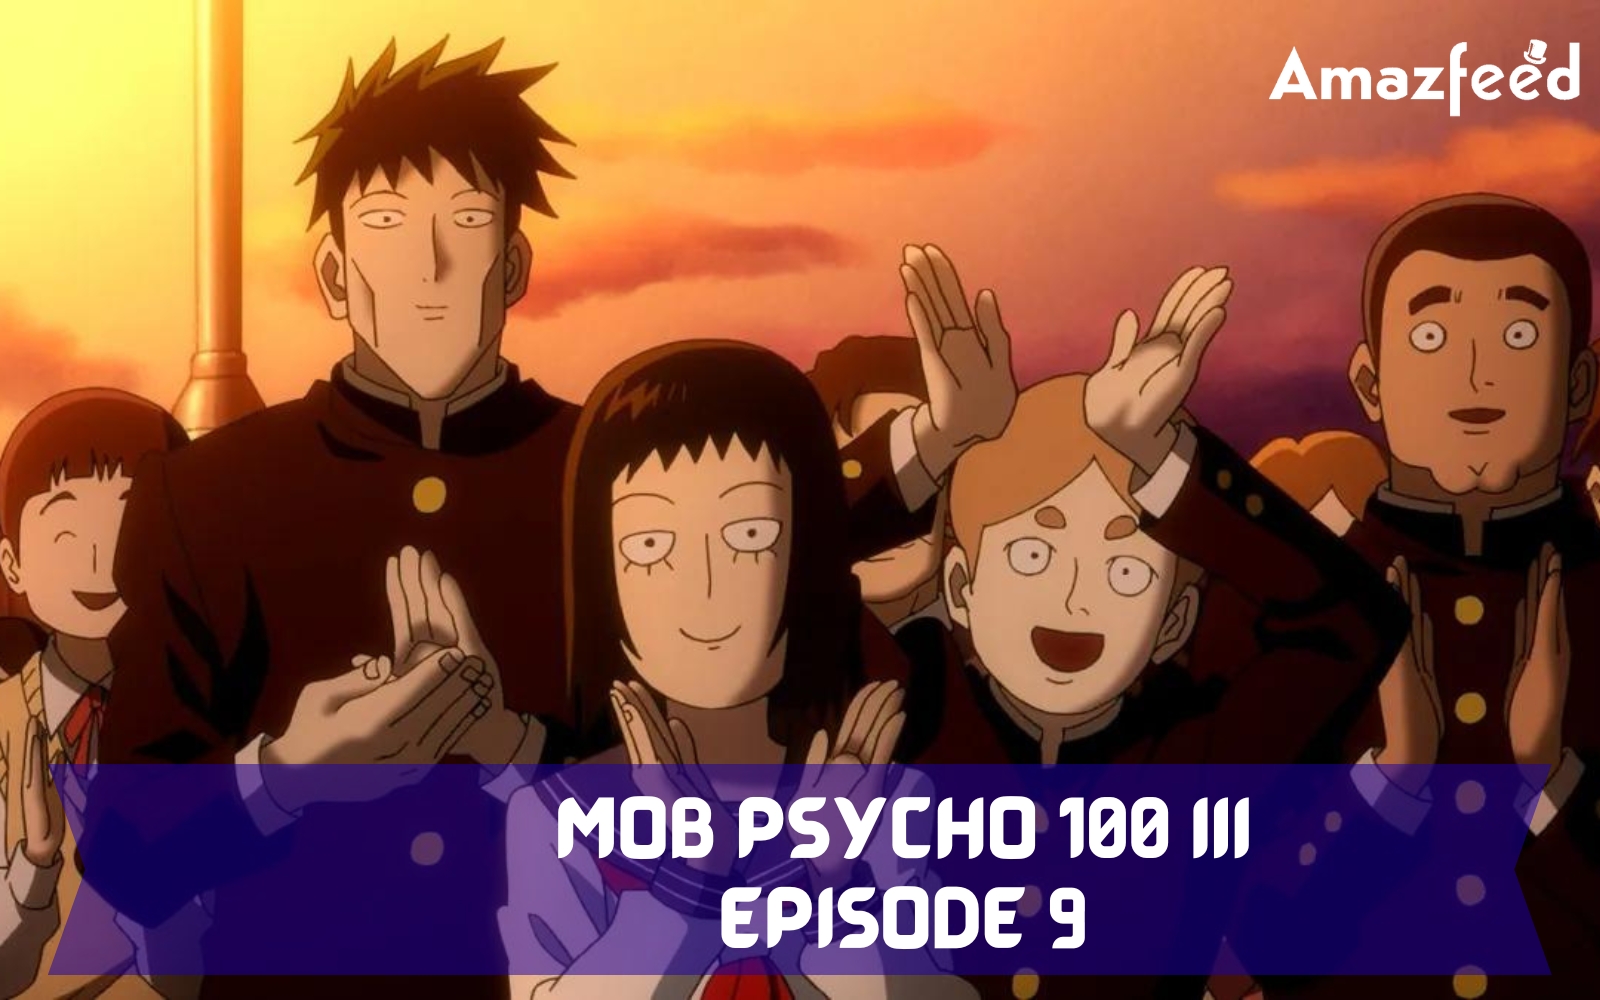 Mob Psycho 100 III Episode 9